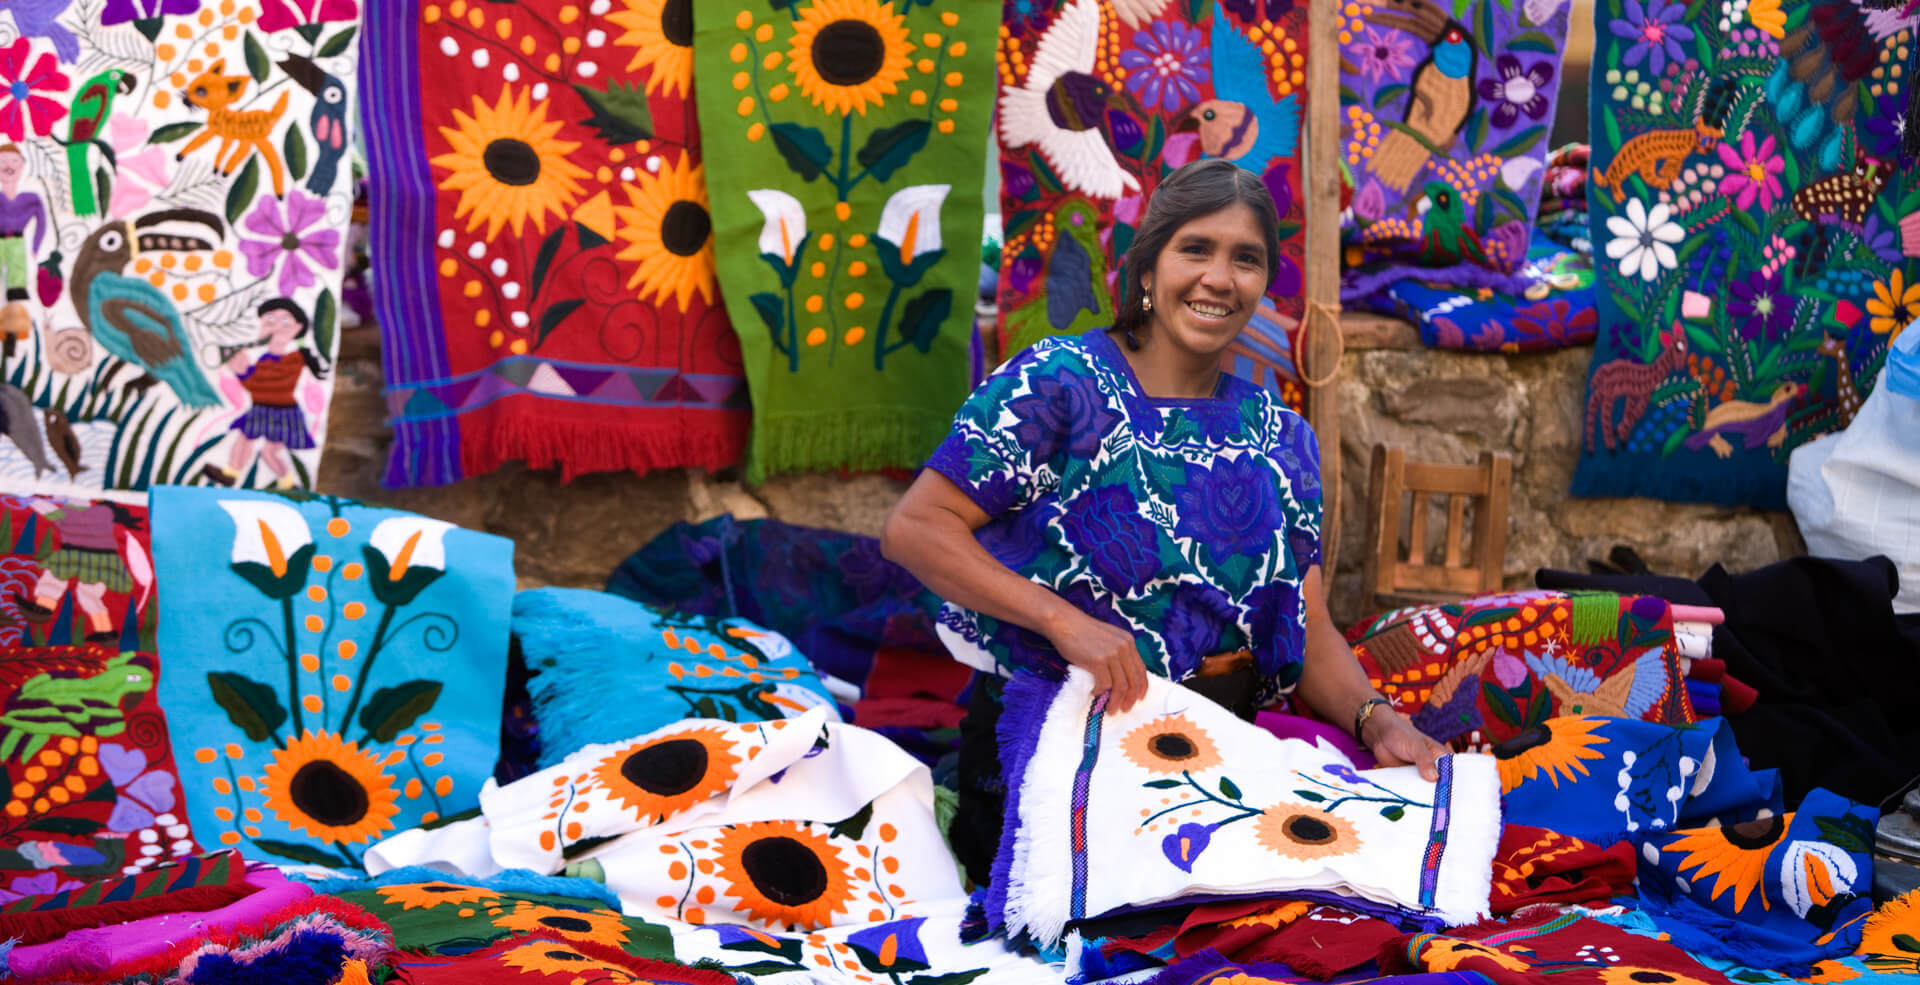 La presencia y transformación en los textiles de San Cristóbal de las Casas  | Chiapasparalelo